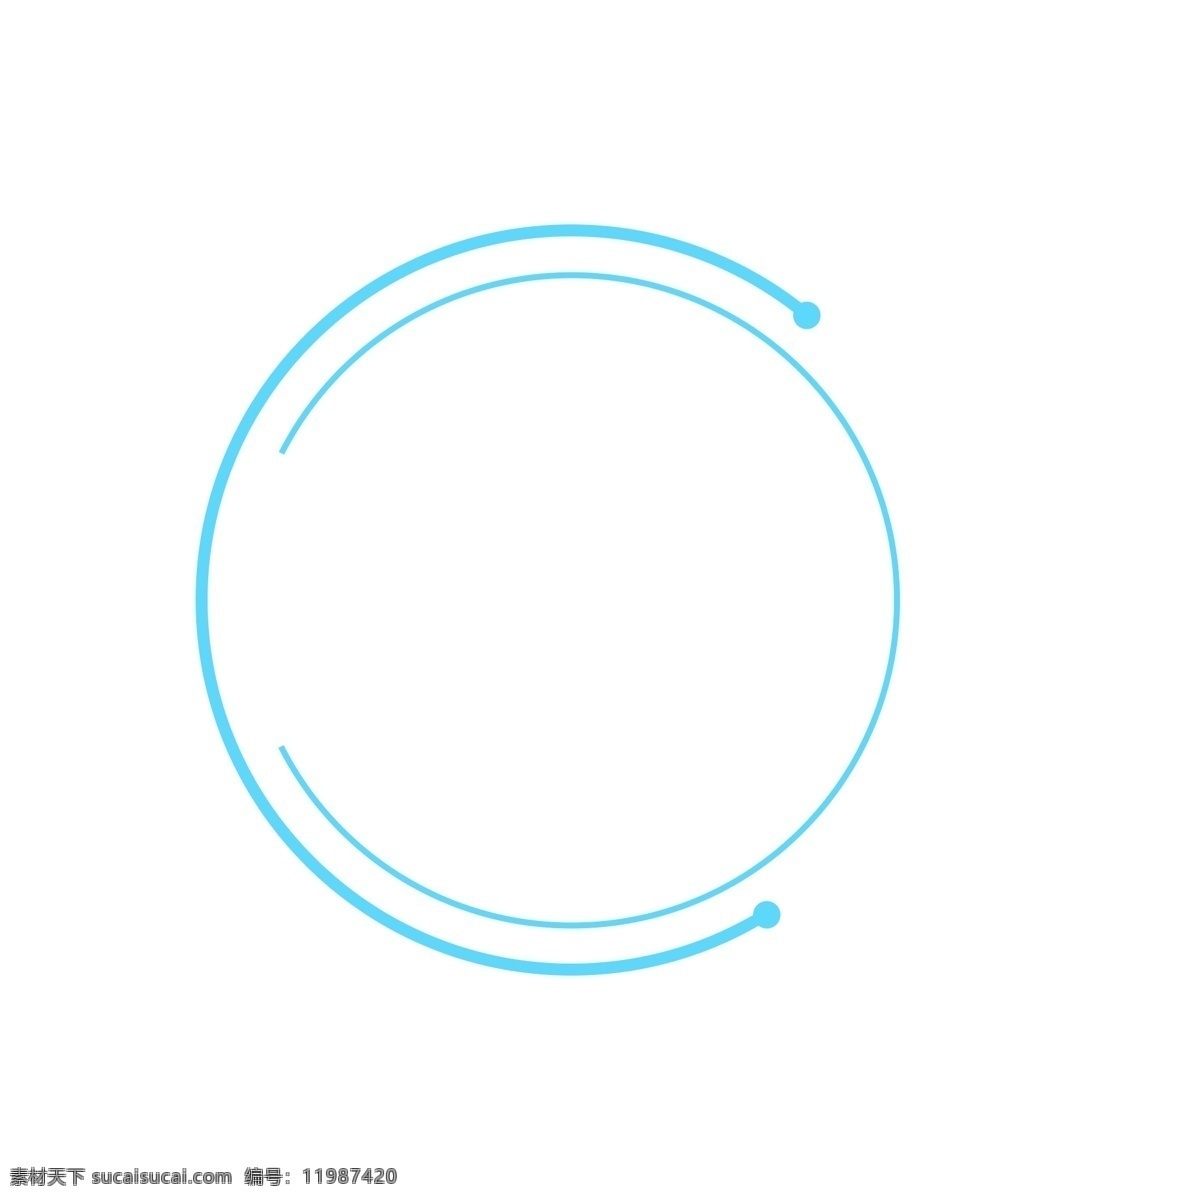 手绘 蓝色 线条 圆形 边框 卡通手绘 水彩 科技 线条边框 圆形边框 小清新 简约 创意 几何图形